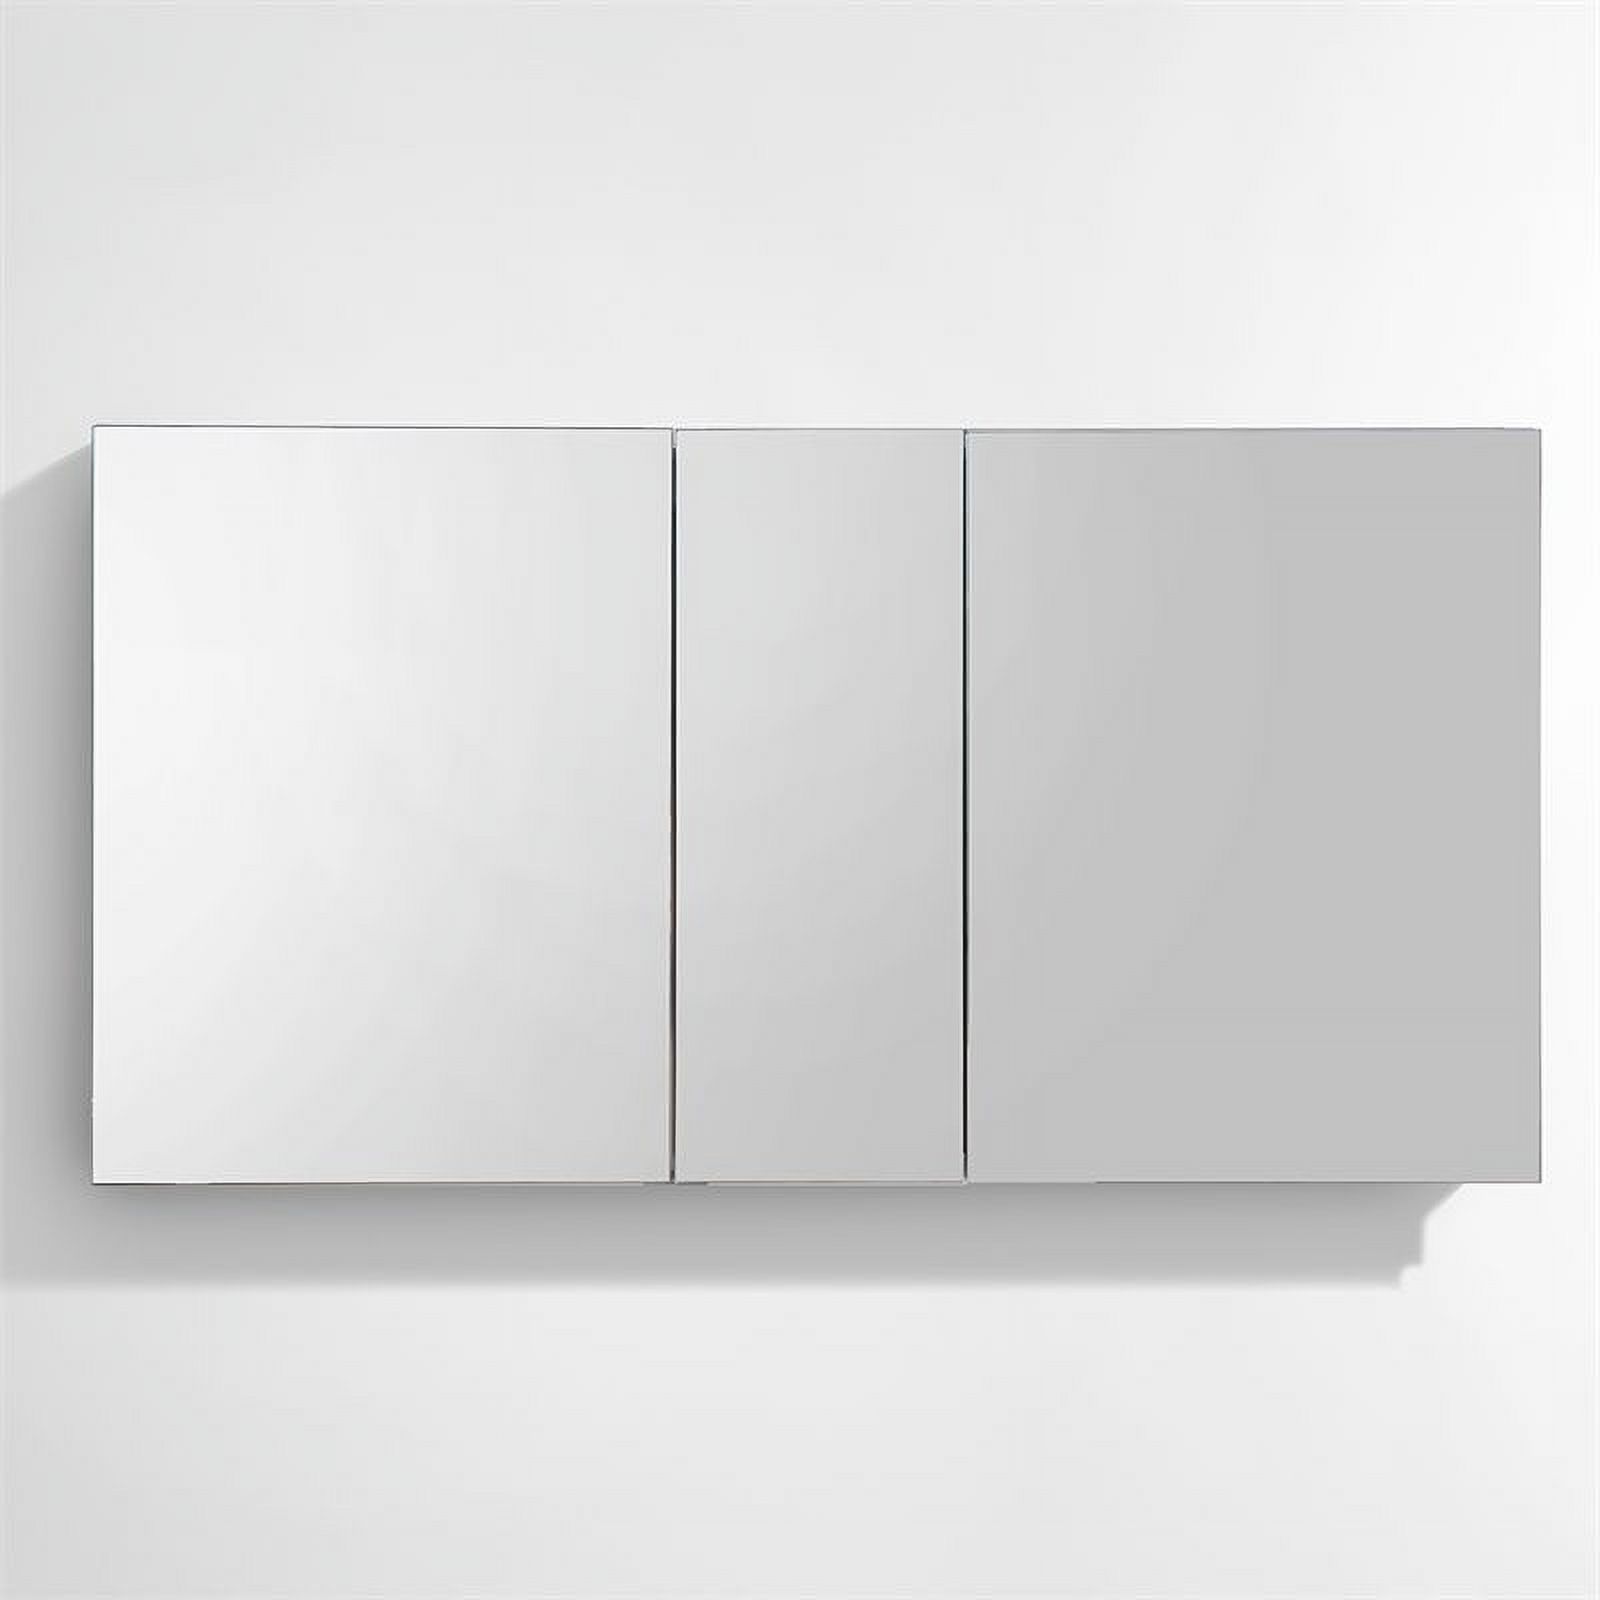 50"Wide Bathroom Medicine Cabinet & Mirrors - image 3 of 8